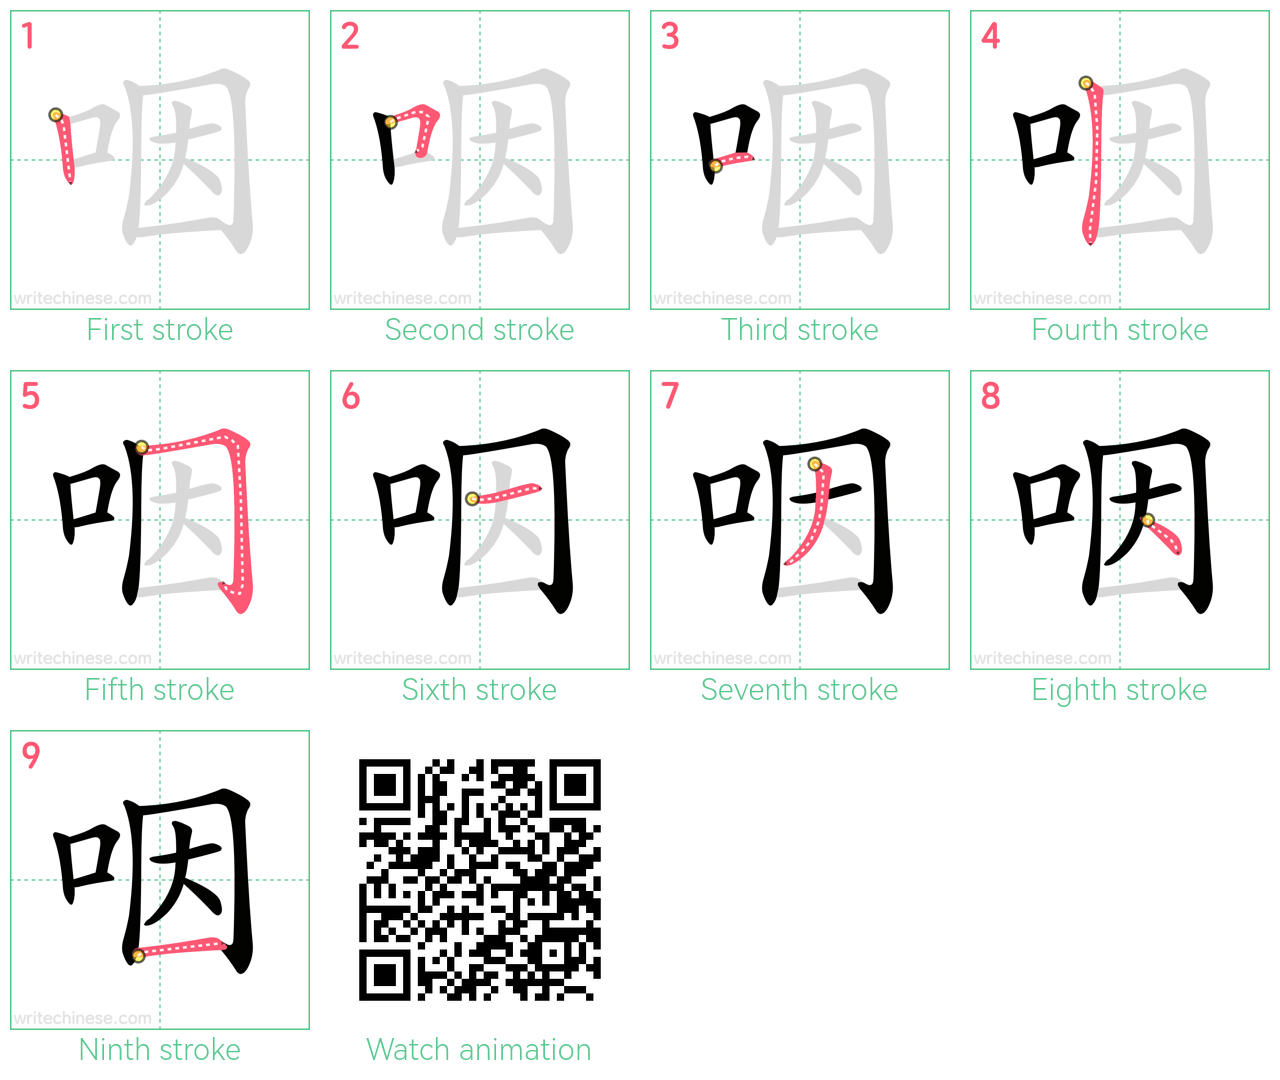 咽 step-by-step stroke order diagrams